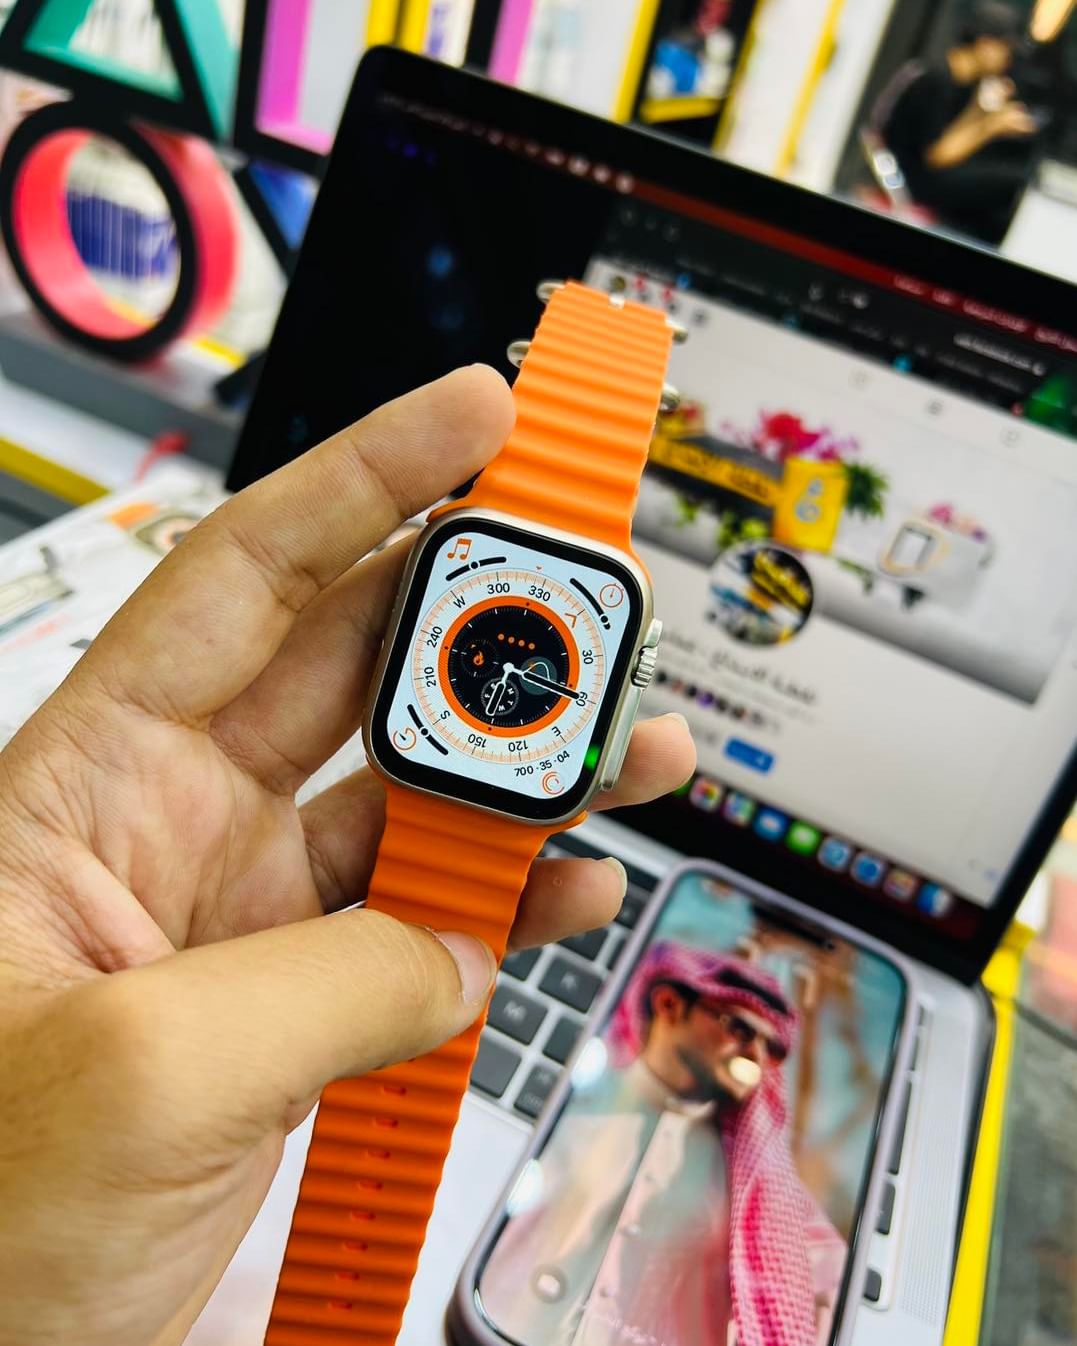 Ultra 8 Series Smart Watch, Ultra 8 Smart Watch Price in Pakistan